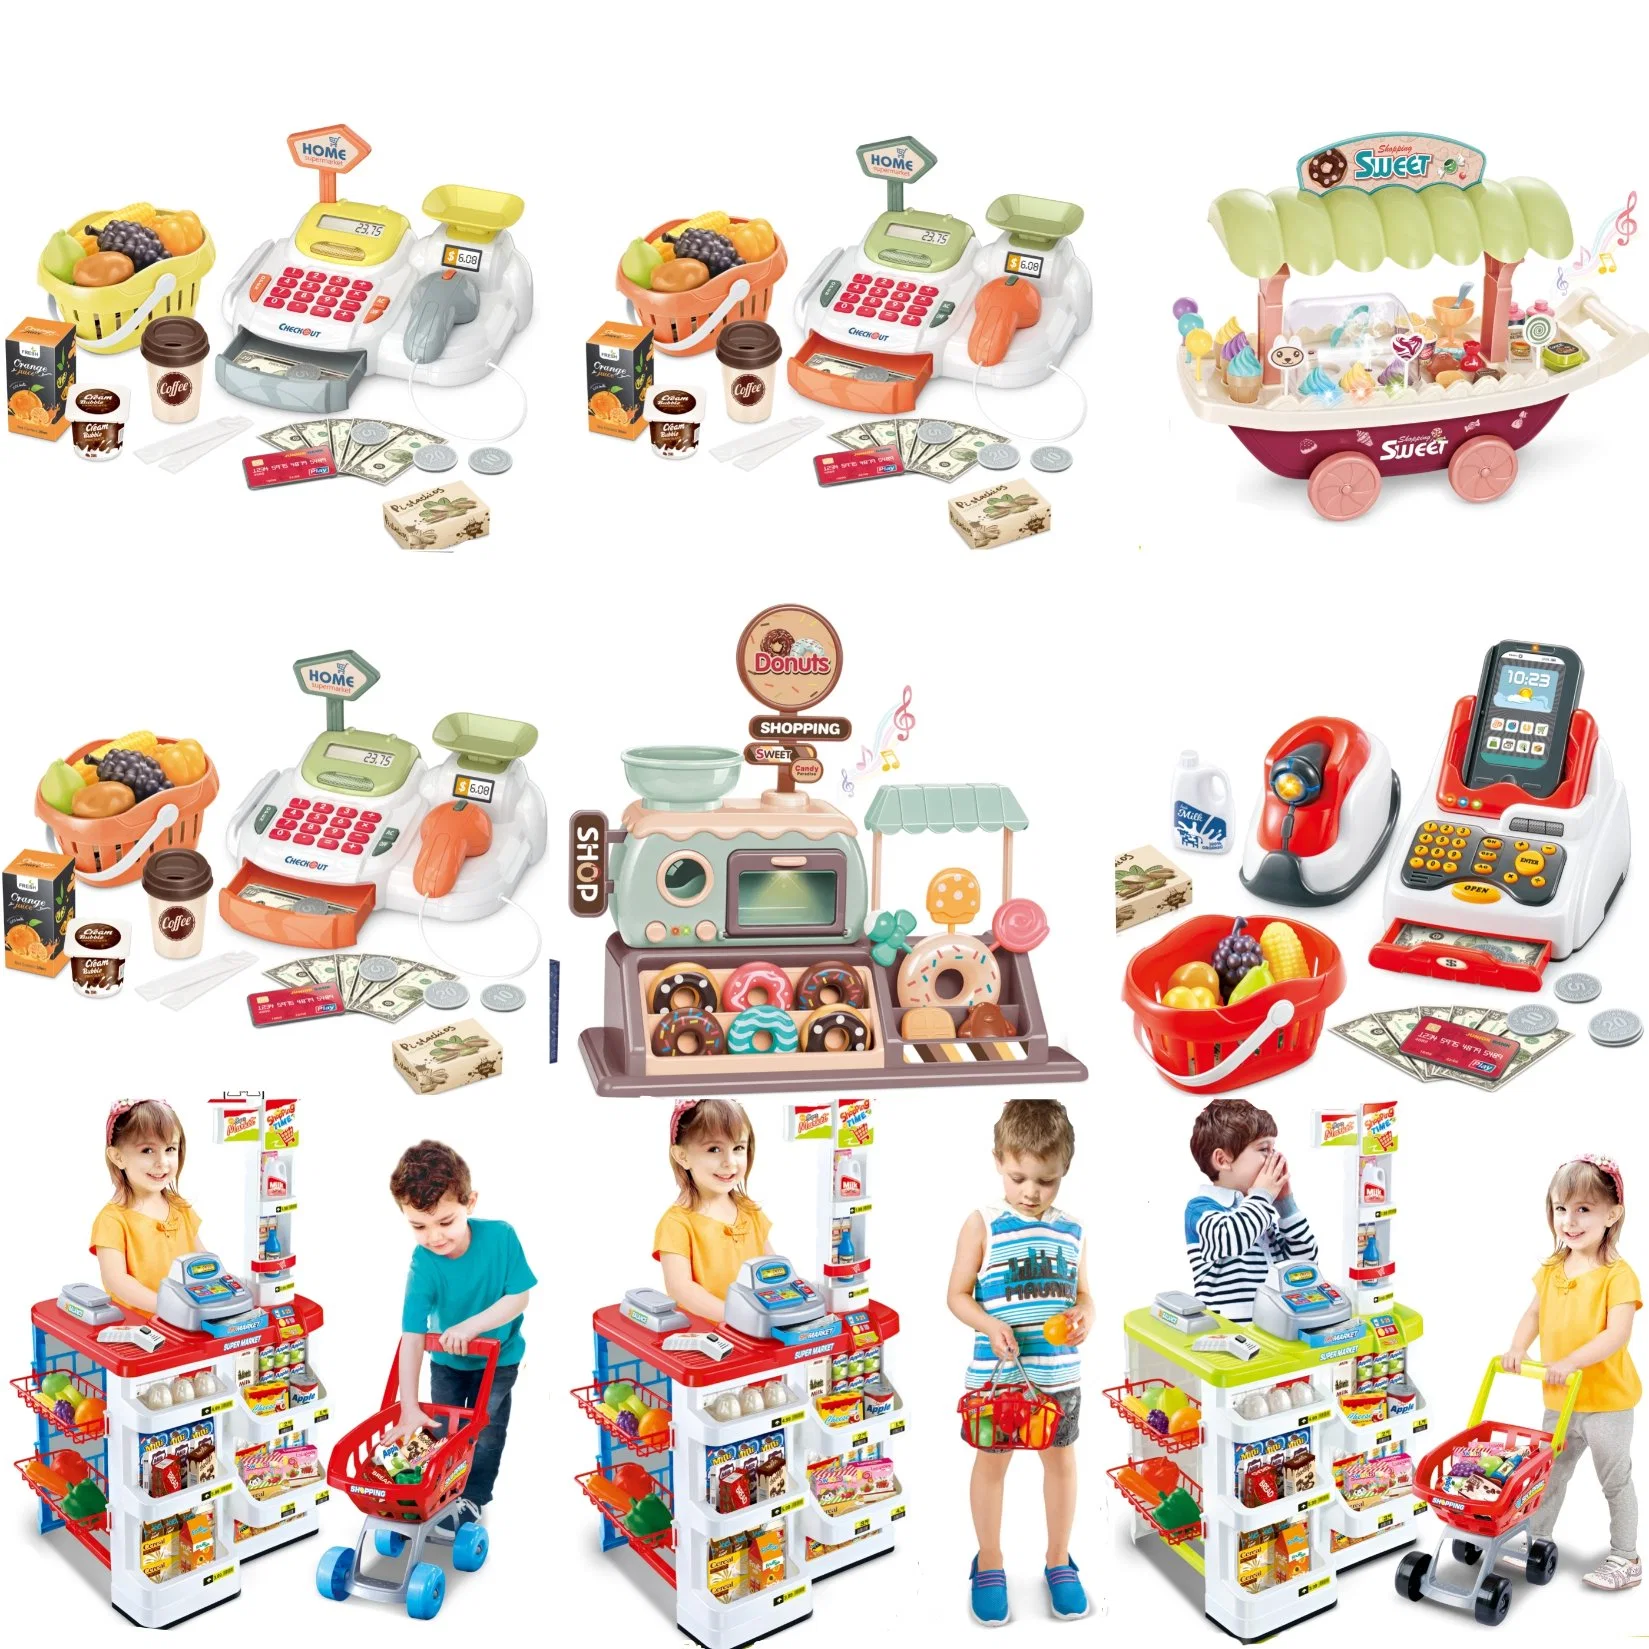 Pot культуры, претендует на воспроизведение кухня игрушка кукла пластмассовых игрушек для детей Дети DIY Self-Assembling заводе прямых продаж оптовым интеллектуальной образовательных игрушек для детей